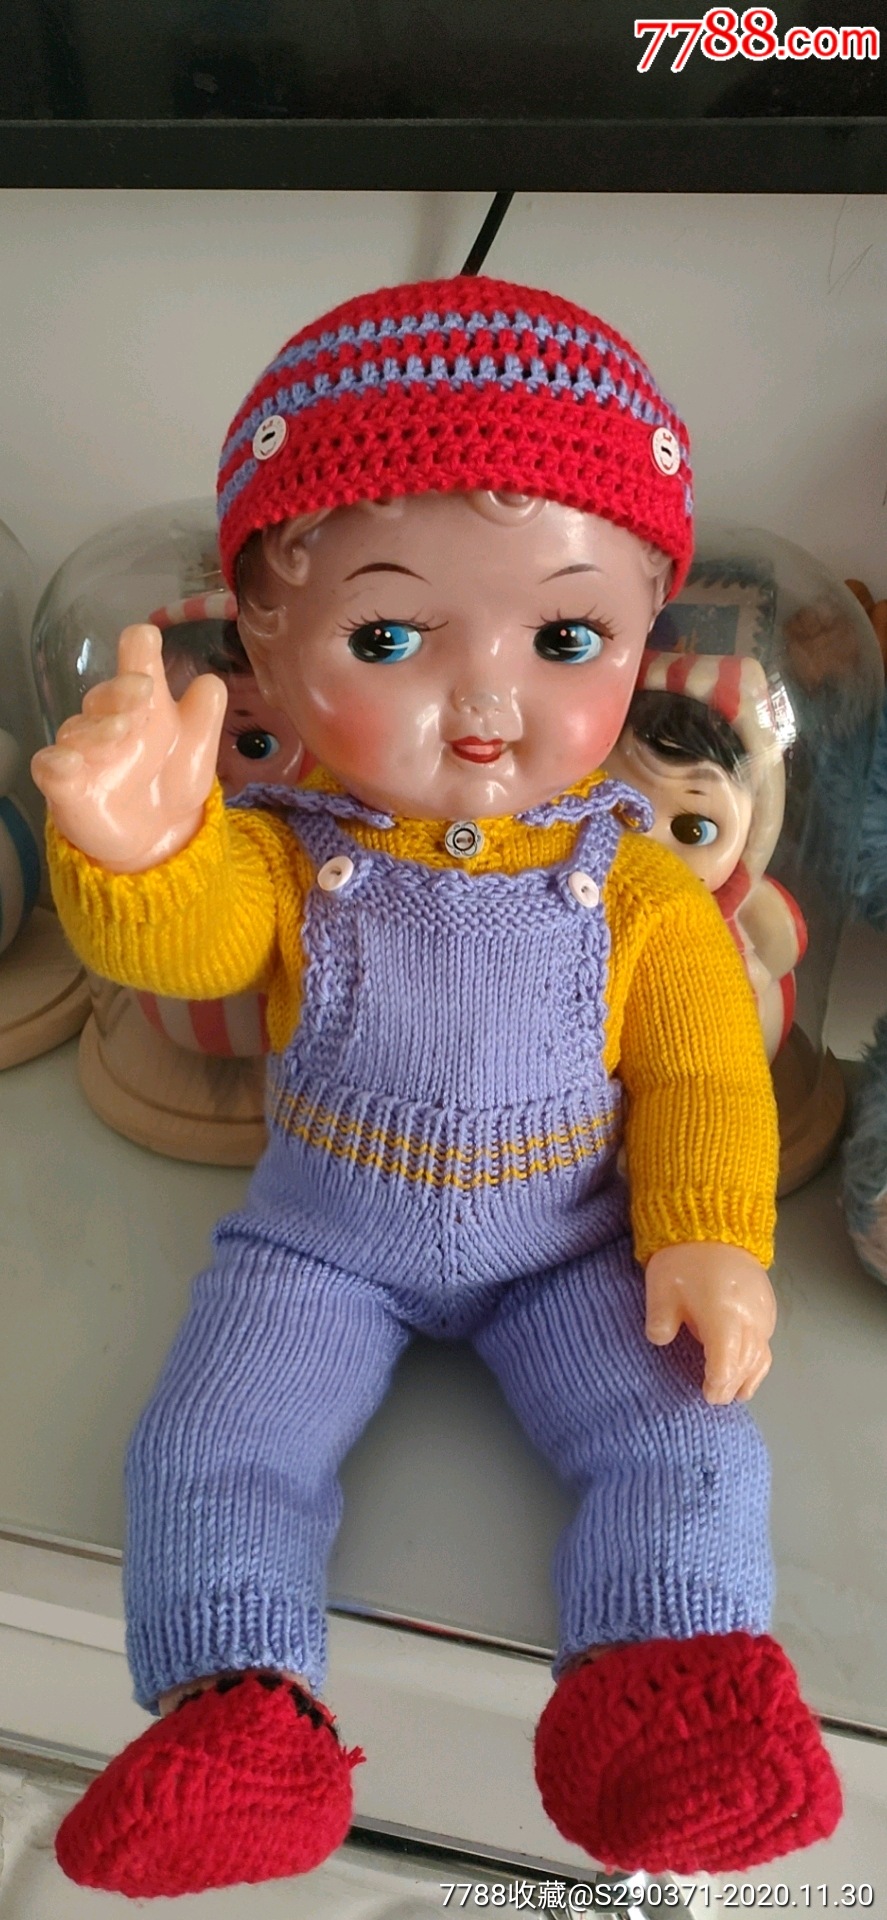 老娃娃,老玩具,塑料娃娃,55cm高